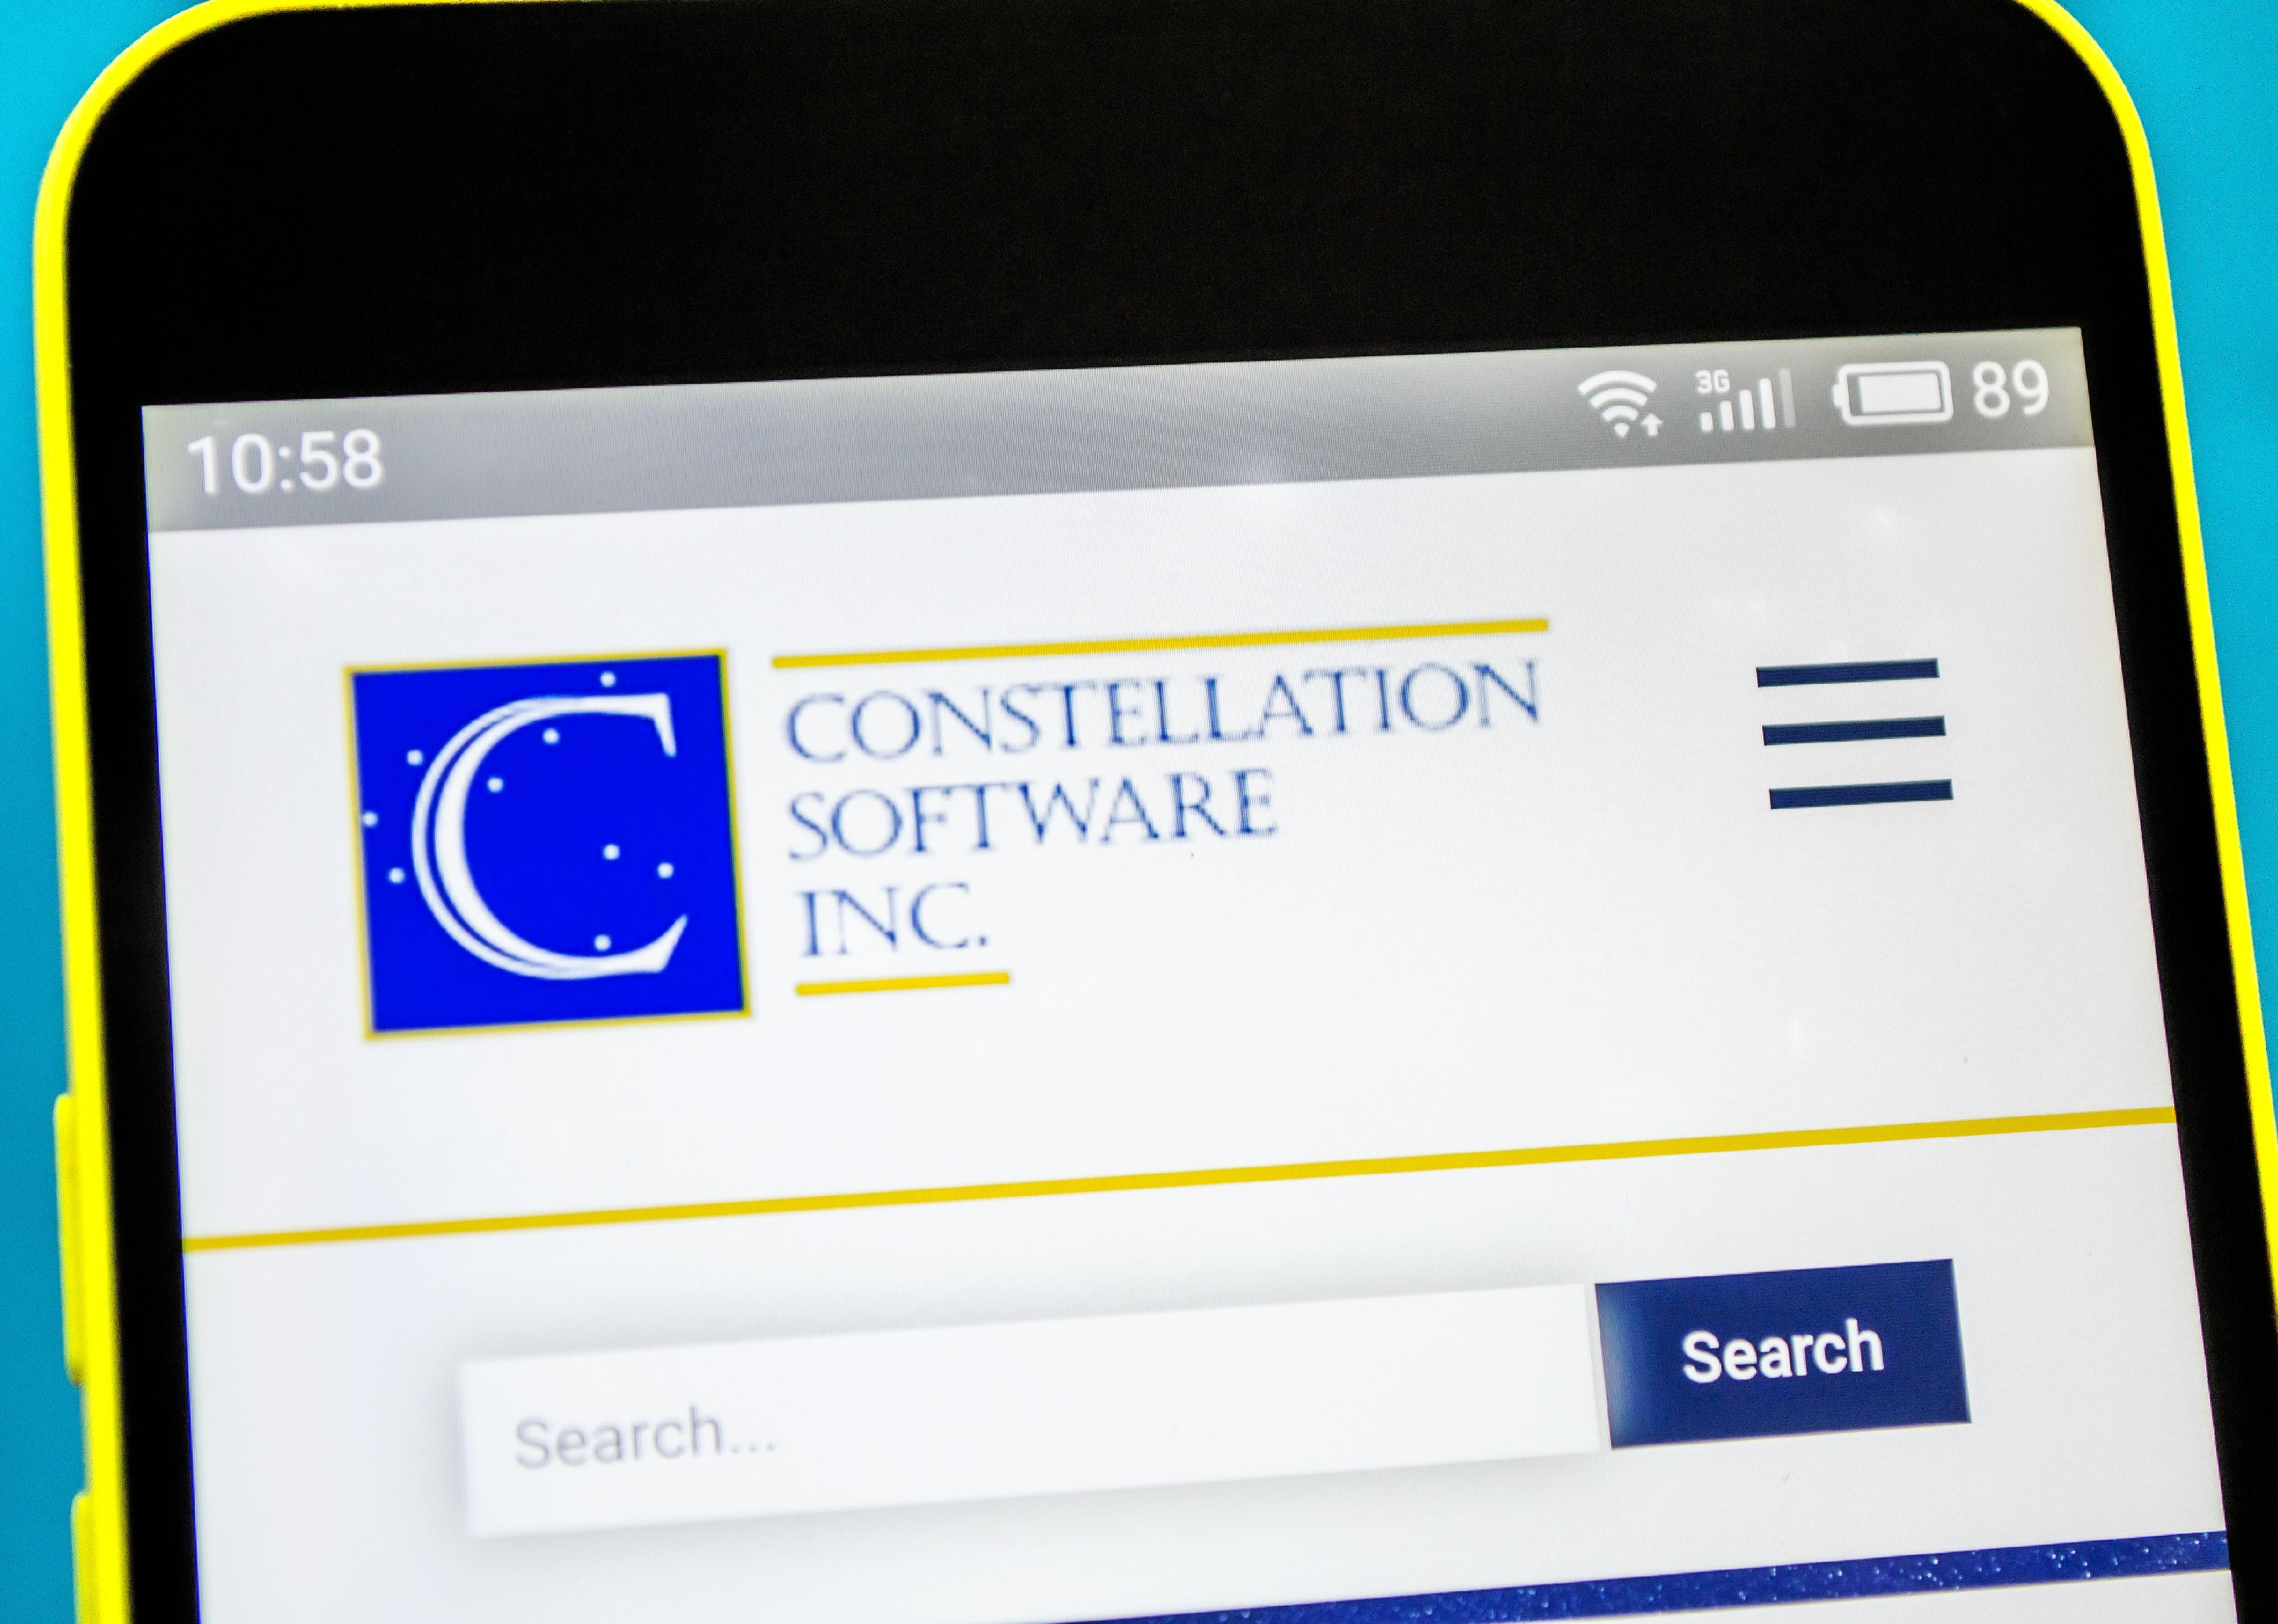 Constellation Software website homepage.